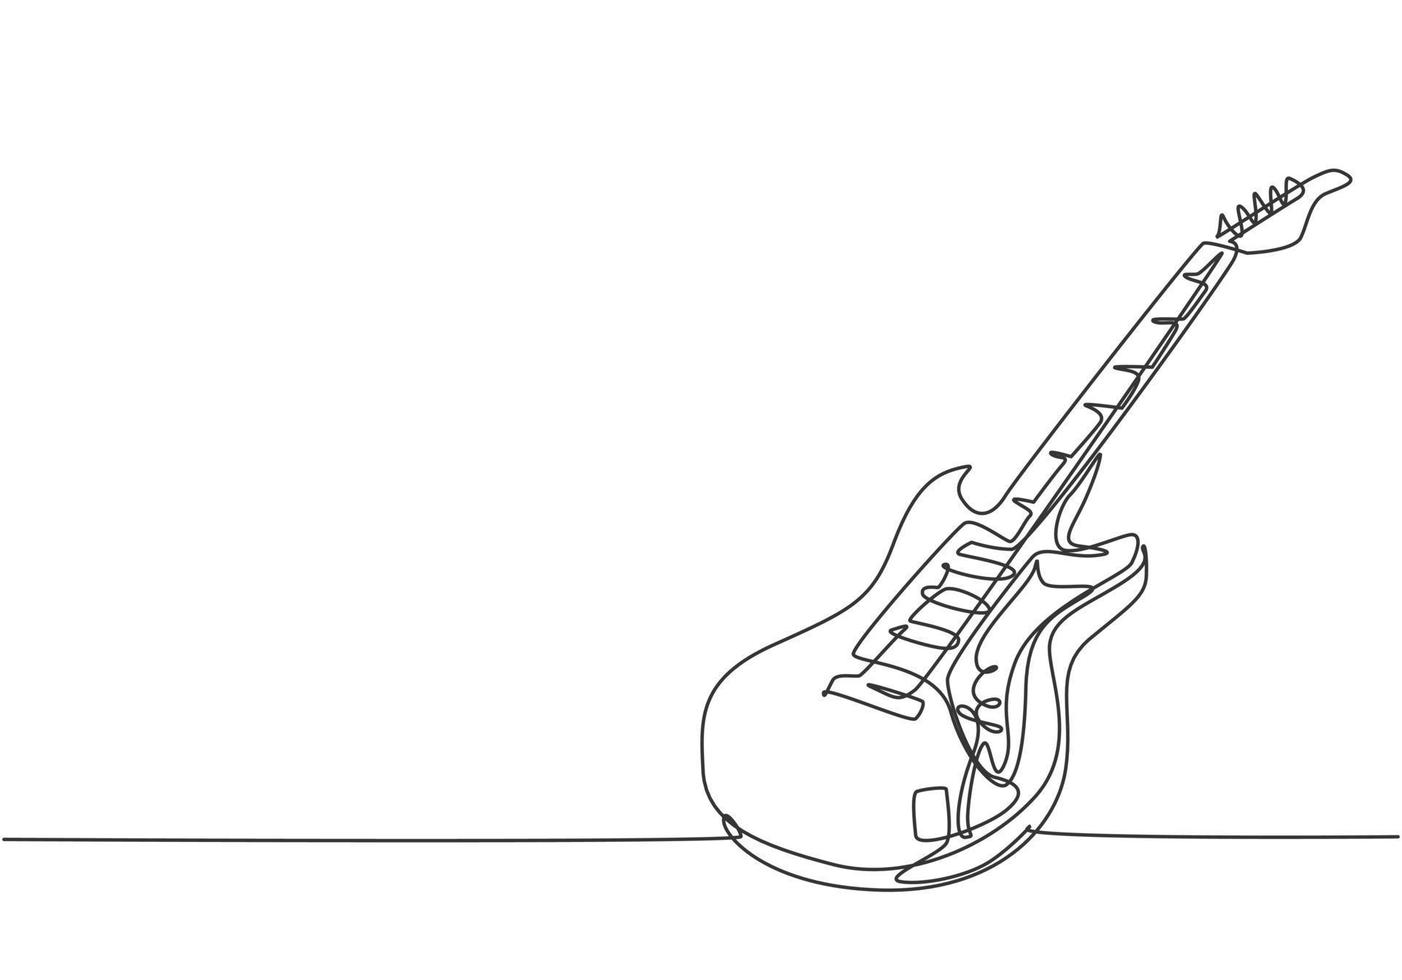 disegno a linea continua di chitarra elettrica. concetto di strumenti musicali a corda. illustrazione di vettore di progettazione grafica di disegno di una linea moderna